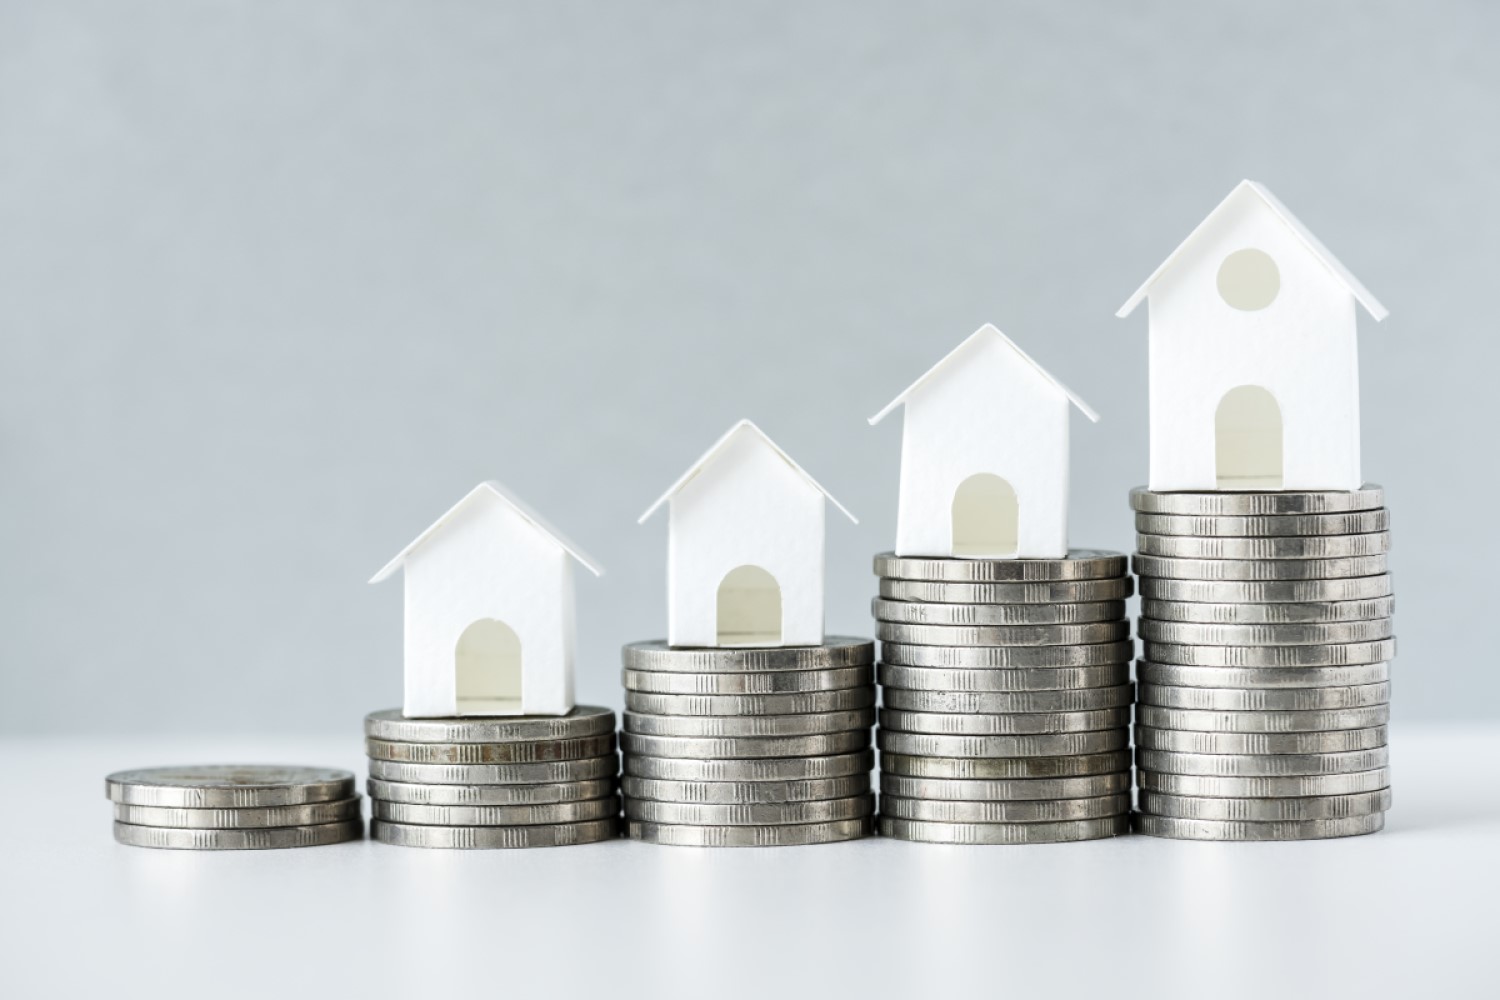 Điểm tin: CBRE dự báo giá căn hộ Hà Nội tăng 5-7% một năm trong 3 năm tới